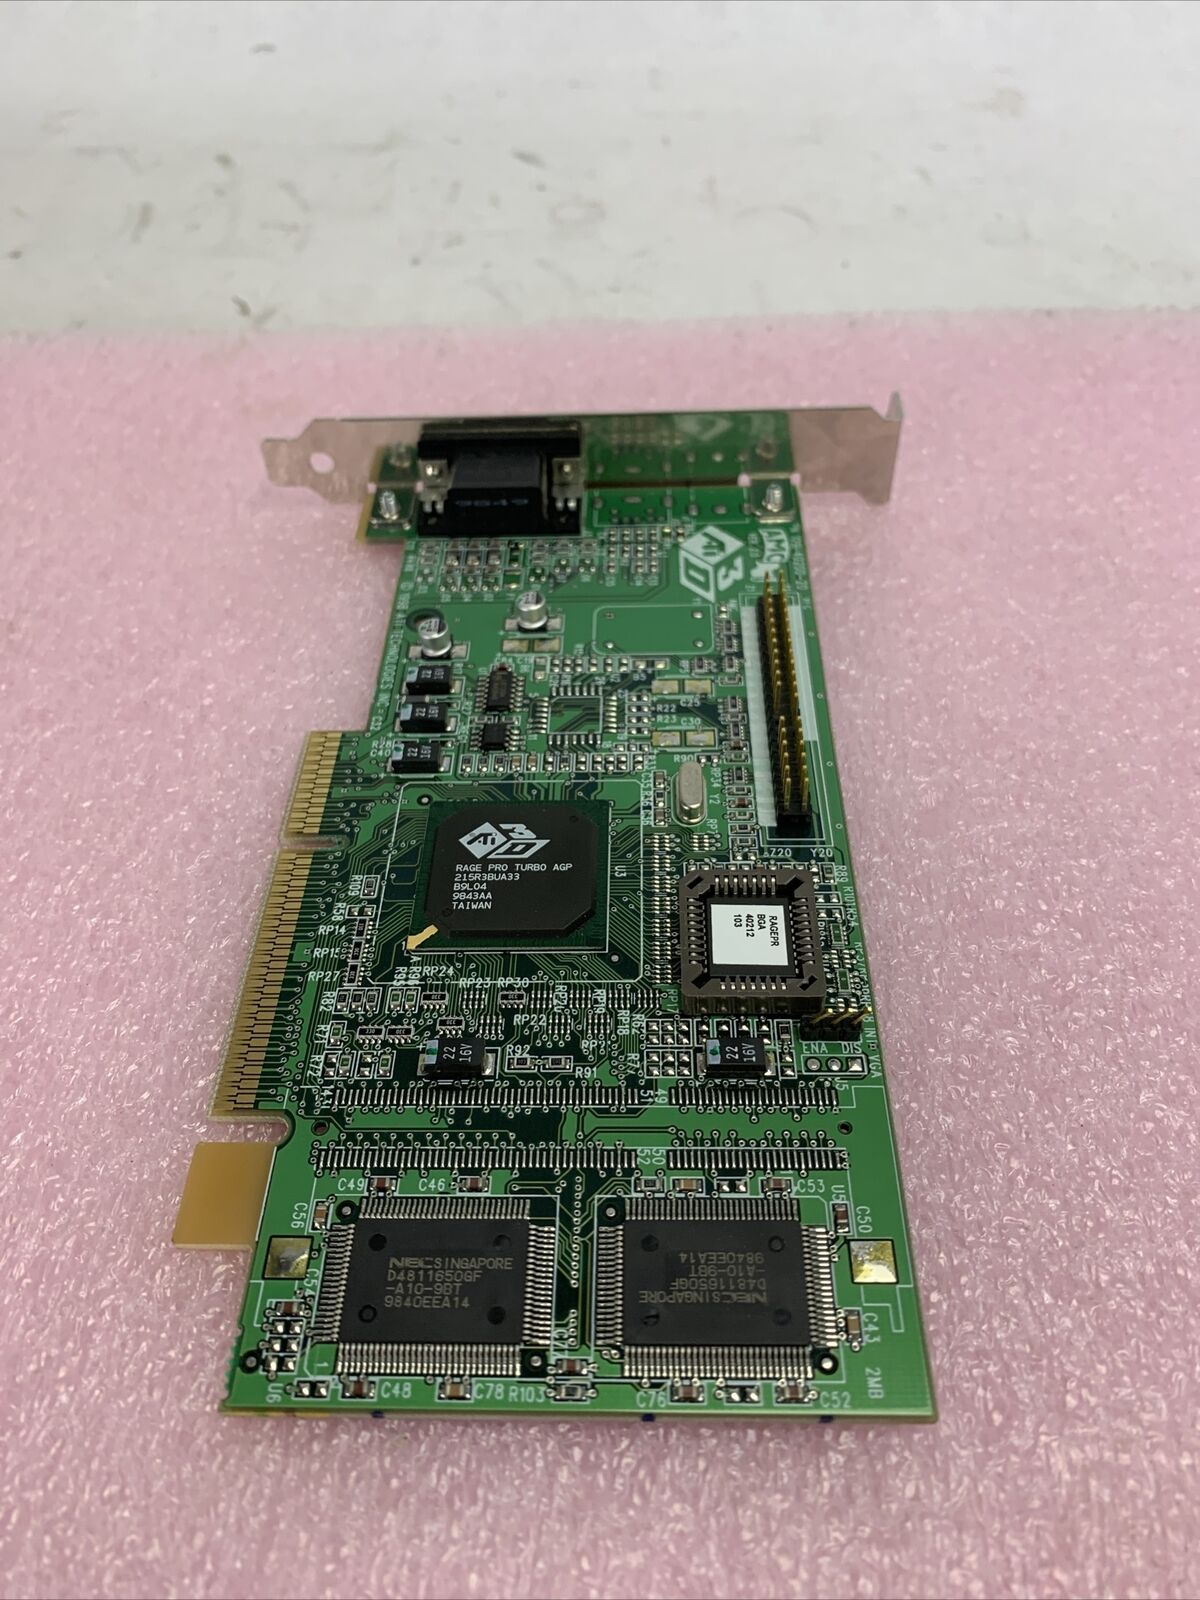 ATI 109-40200-20 Rage Pro Turbo 8MB AGP Graphics Card